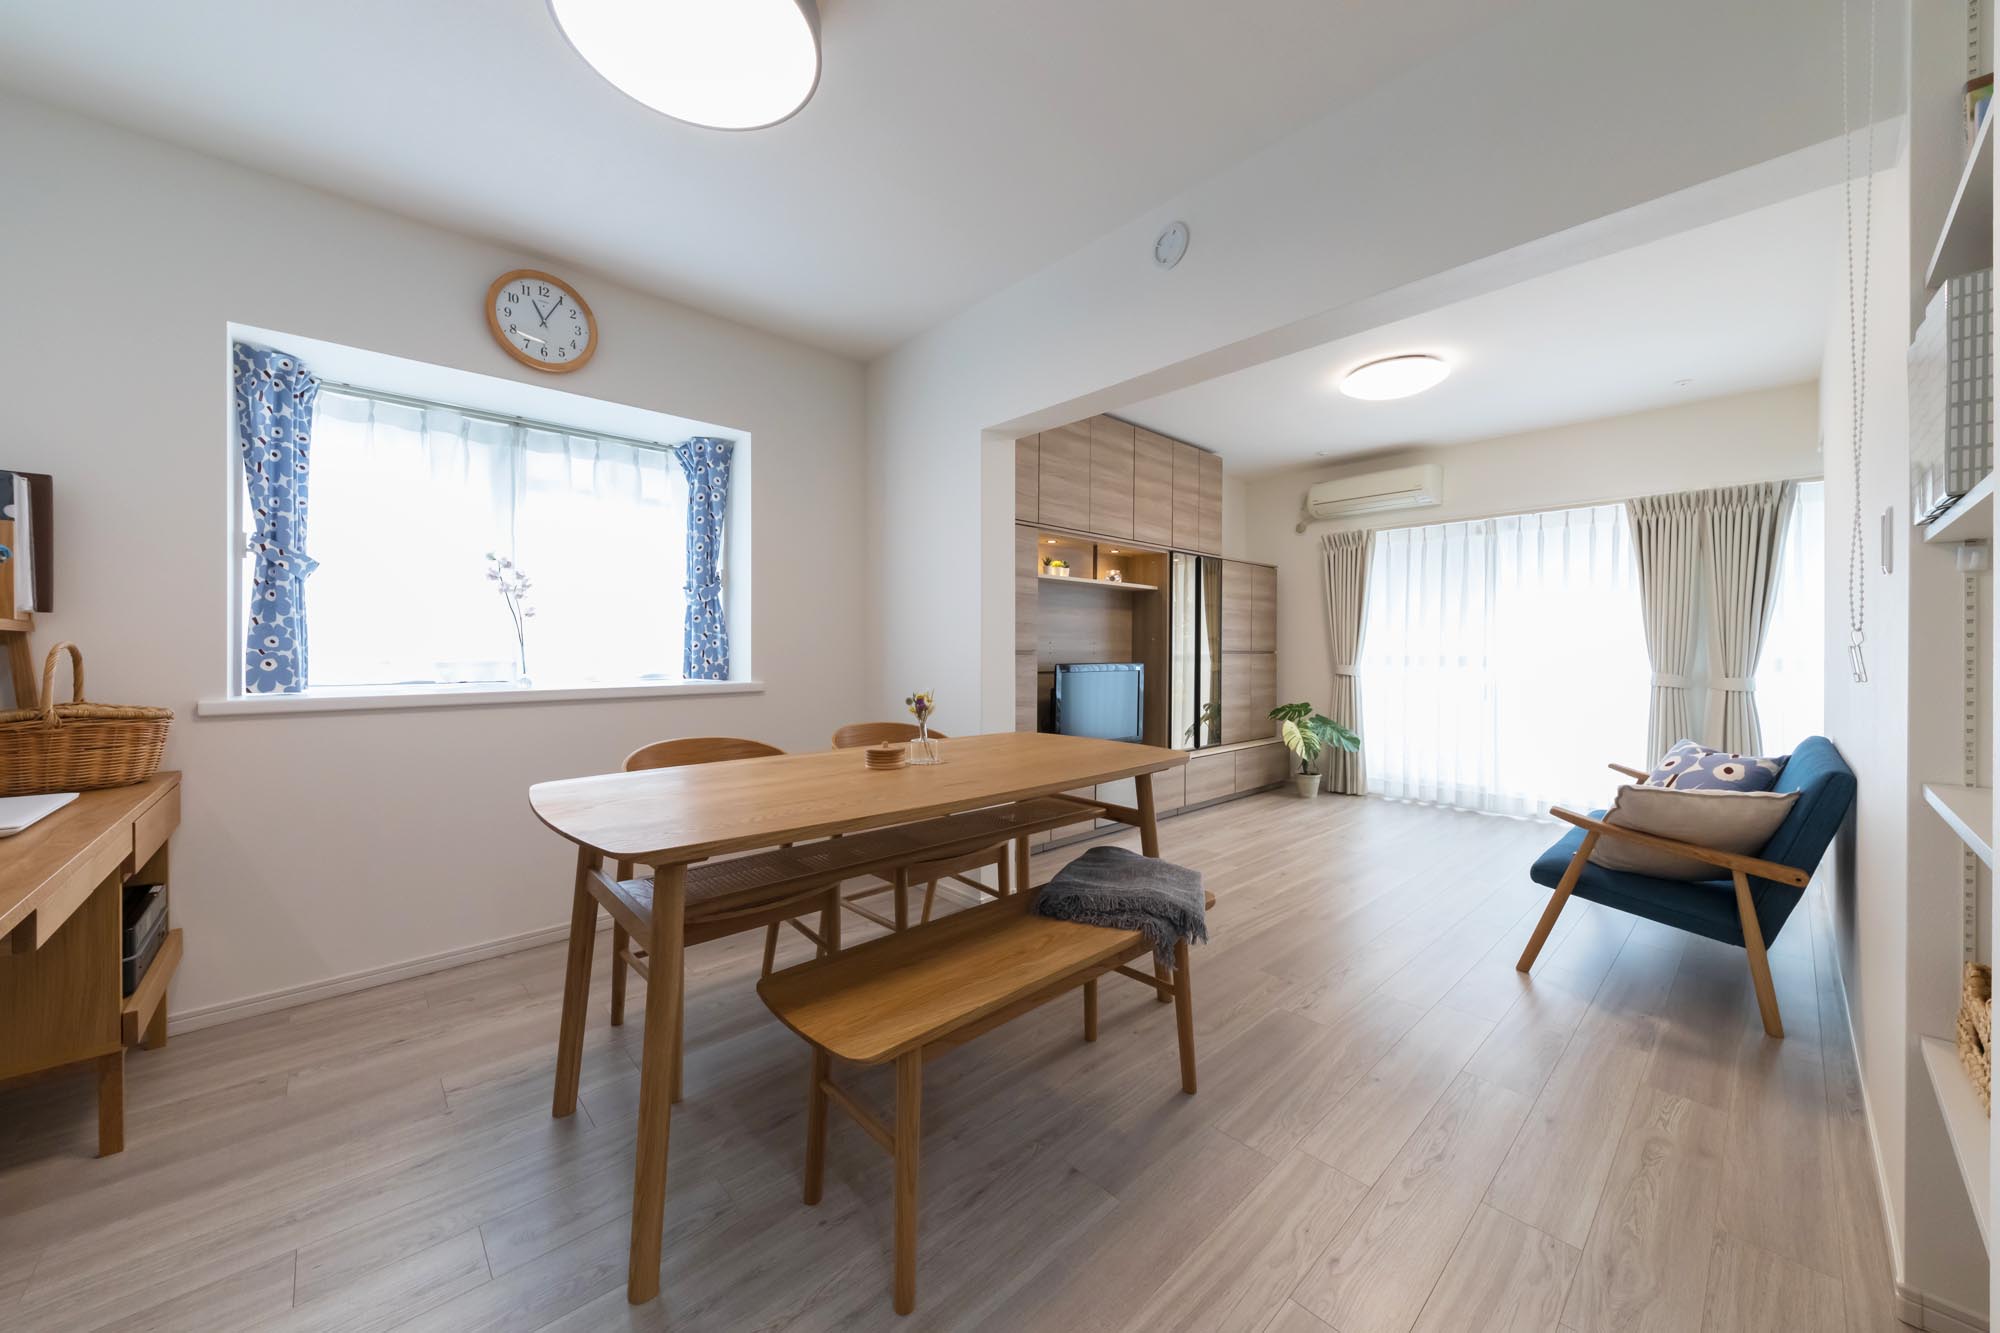 【最新リノベ事例】これからもずっと住み続けたい家・・・横浜市南区のマンションリノベーション事例